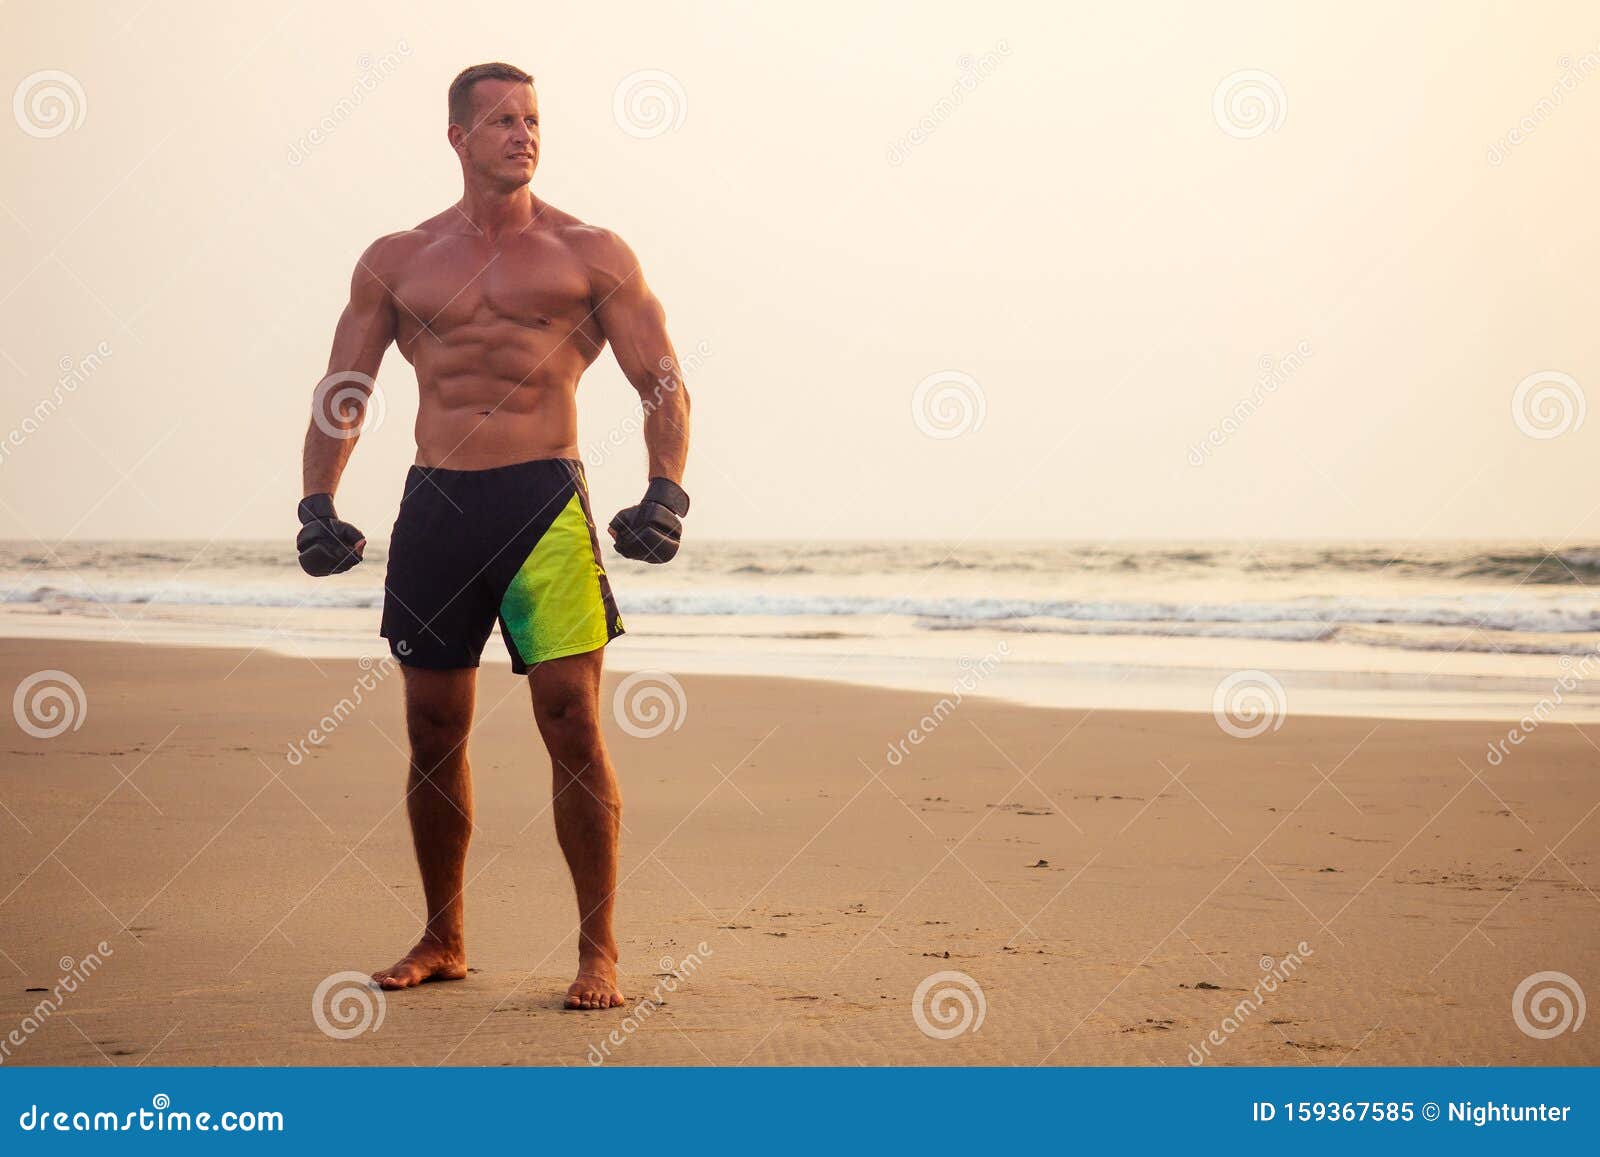 2014年迈阿密健身模特比赛冠军Justin St Paul肌肉照片 肌肉男模 贾斯丁圣保罗 美国 健身迷网